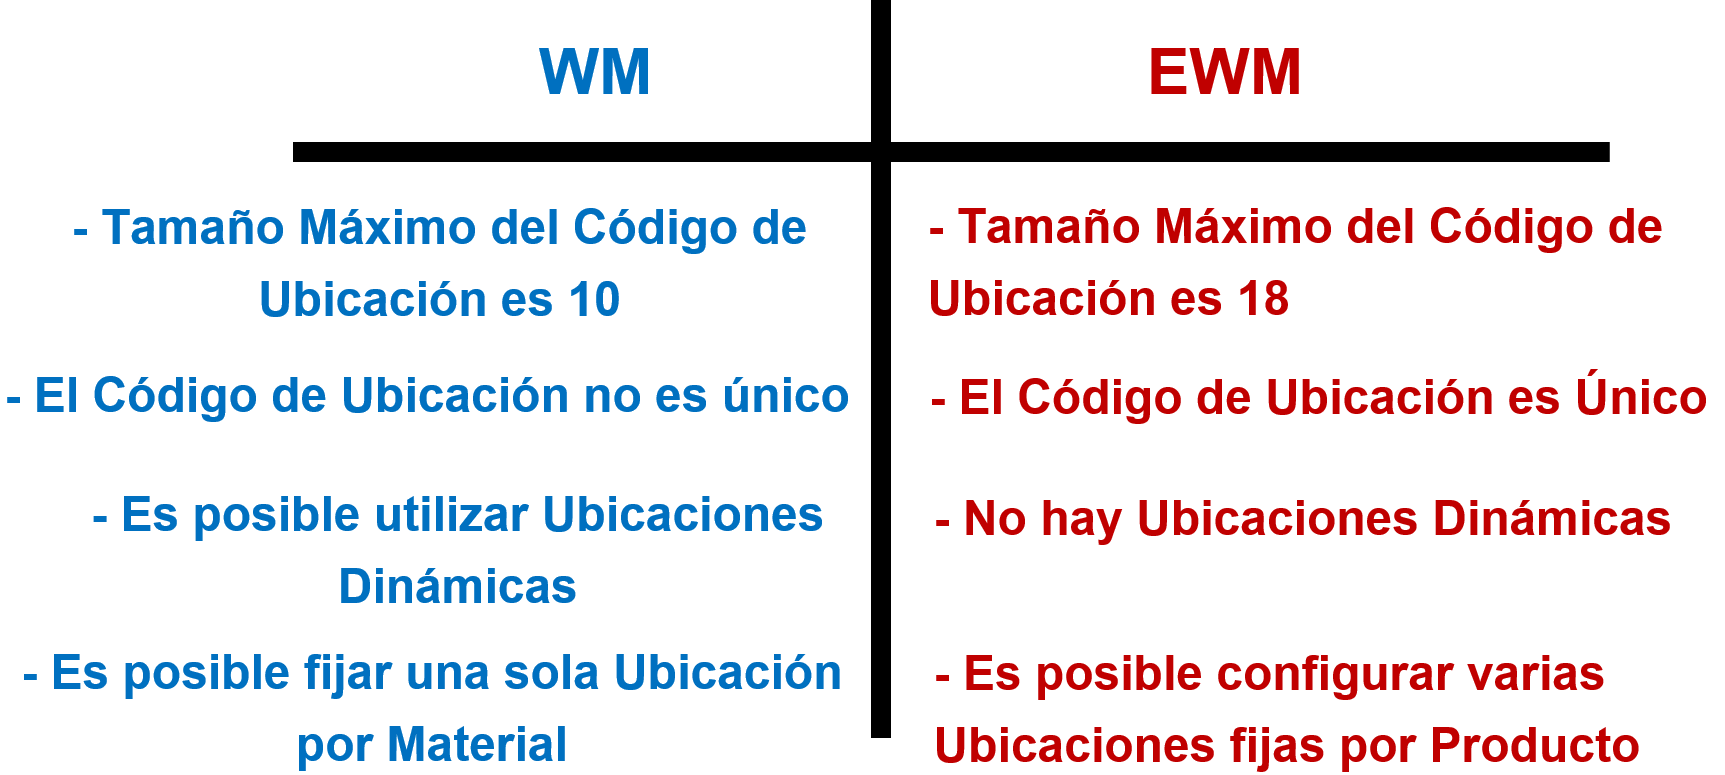 Ubicación en WM vs EWM